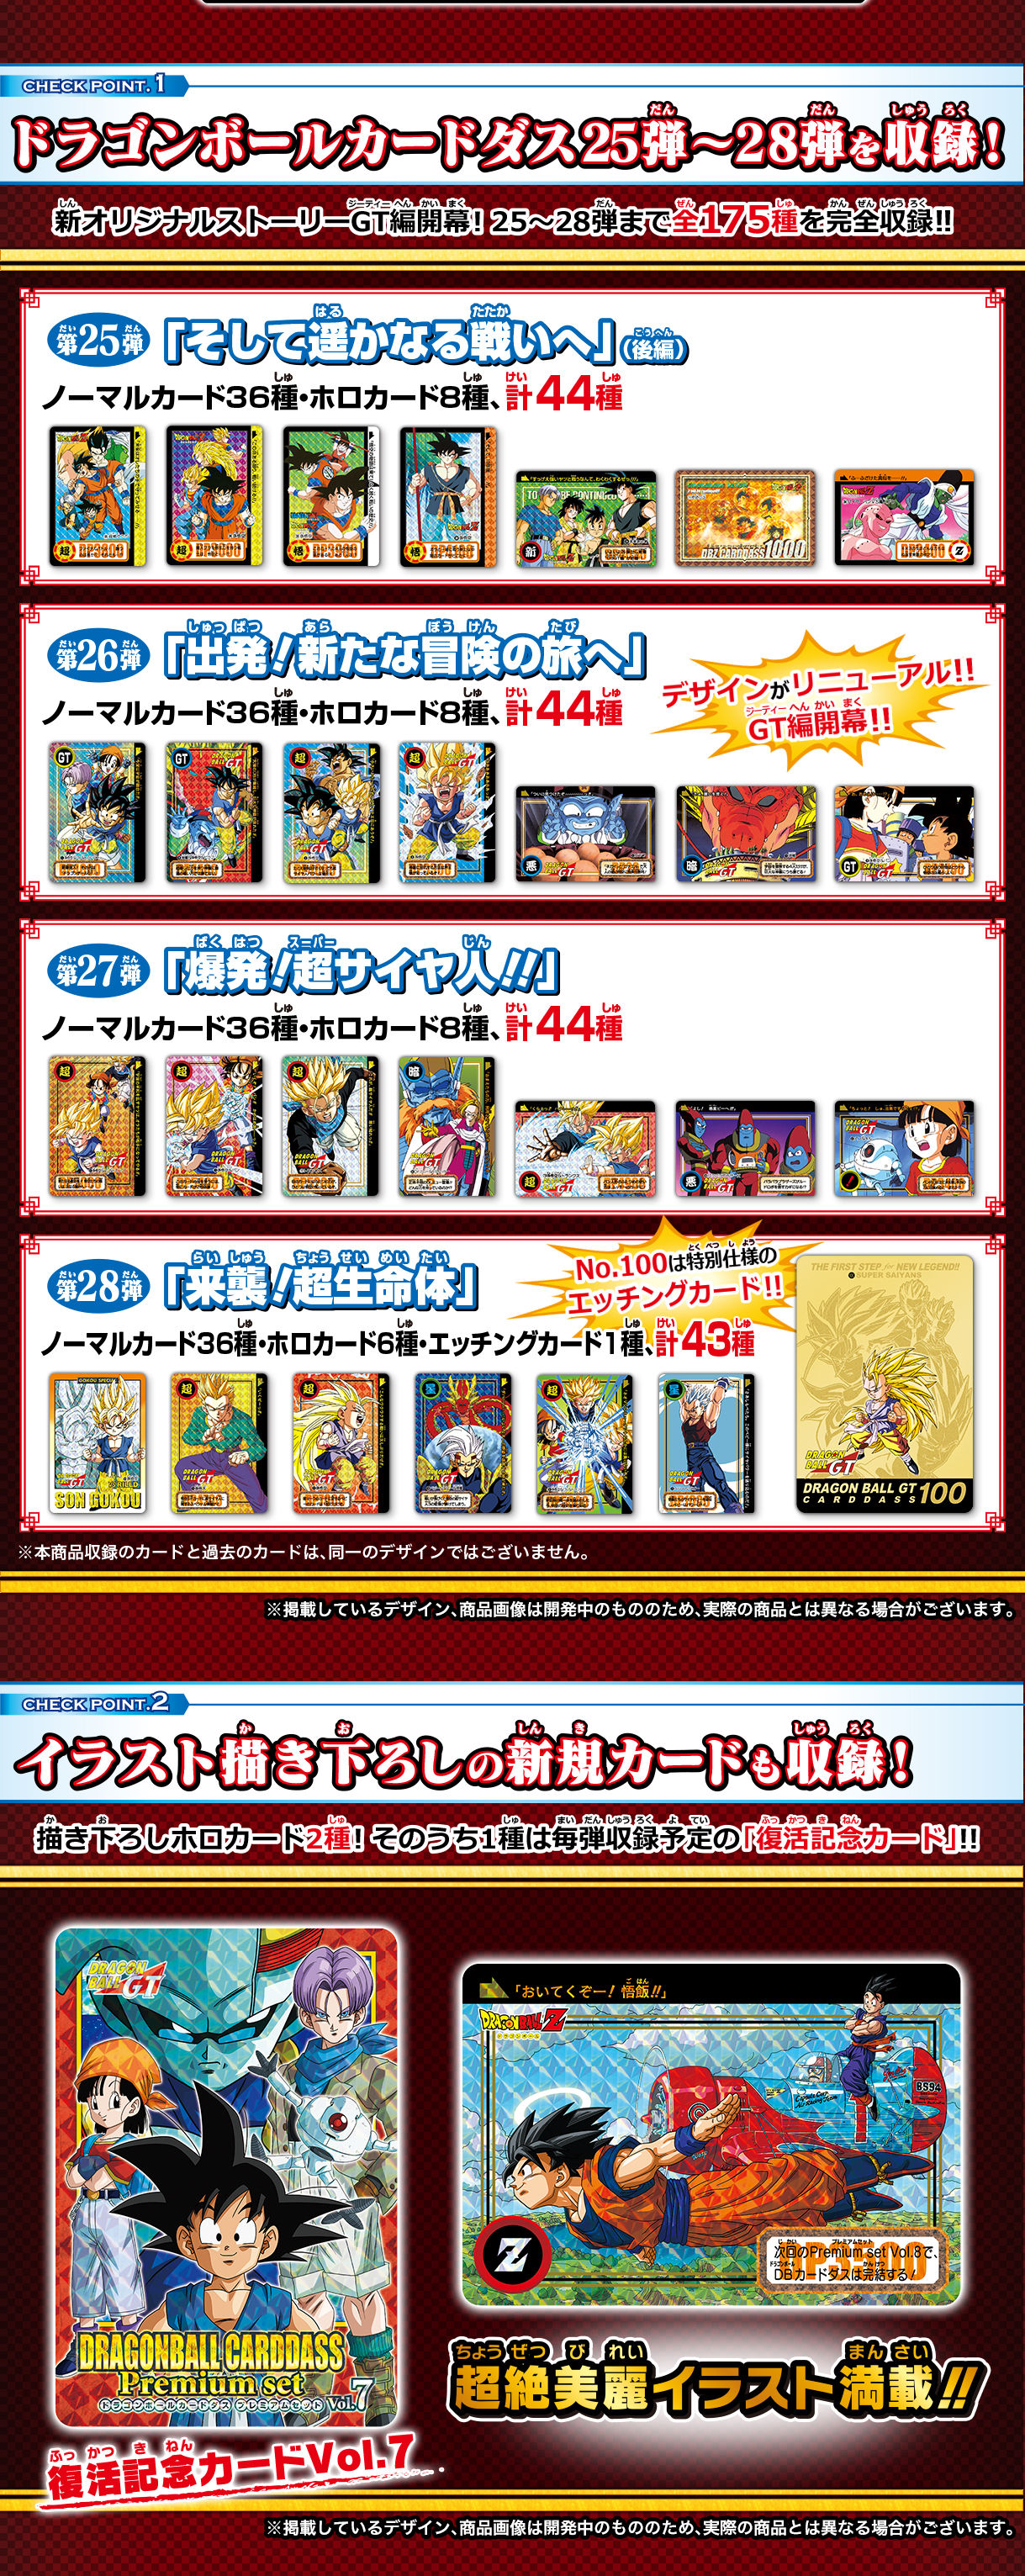 ドラゴンボールカードダス Premium set Vol.7 プレミアムセット-